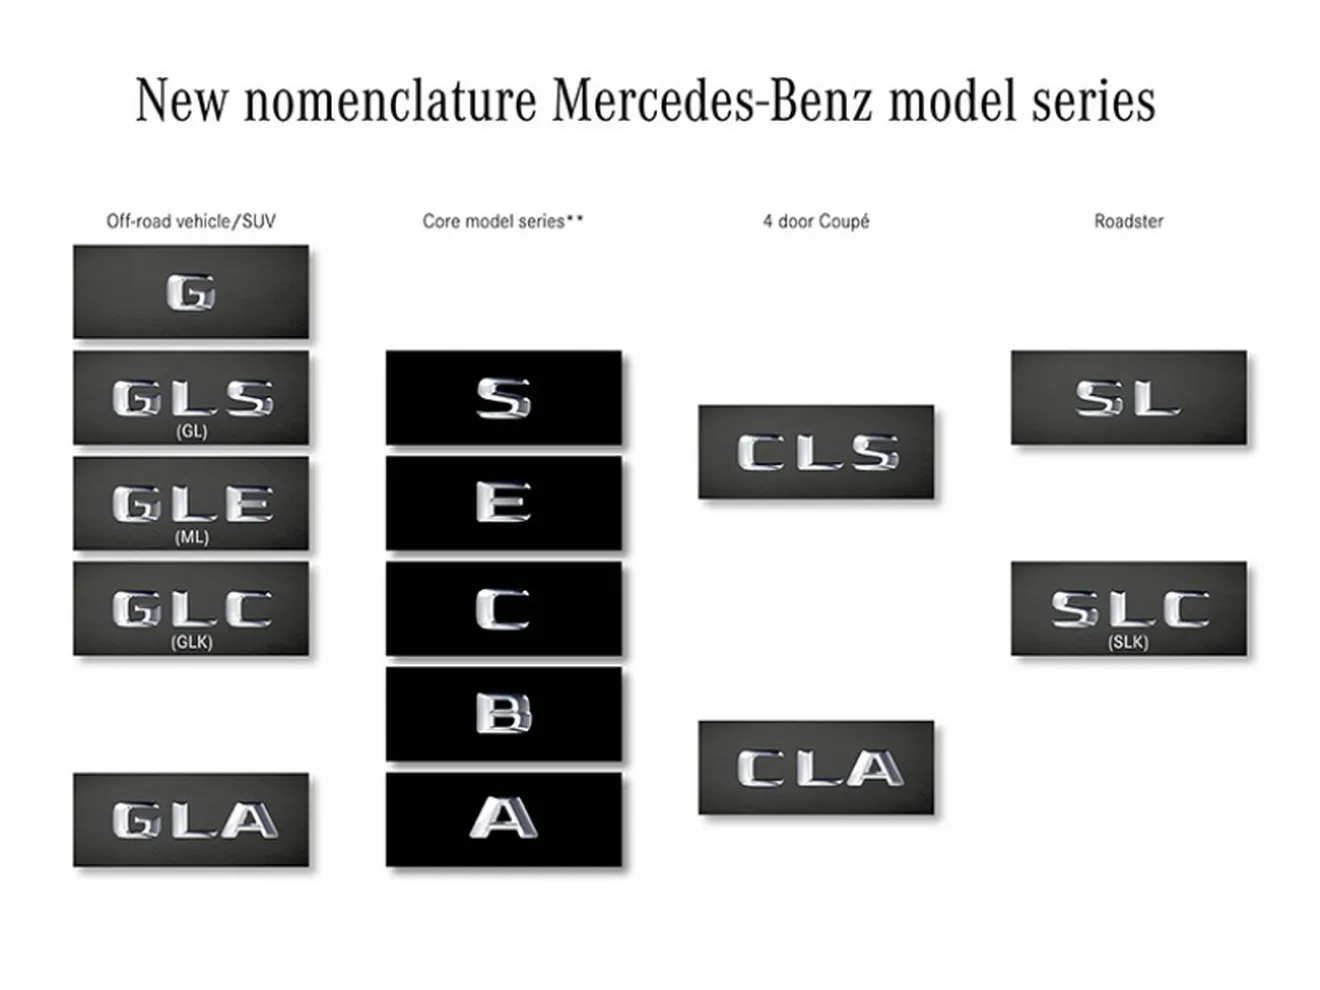 Mercedes confirma oficialmente el cambio en la denominación de modelos